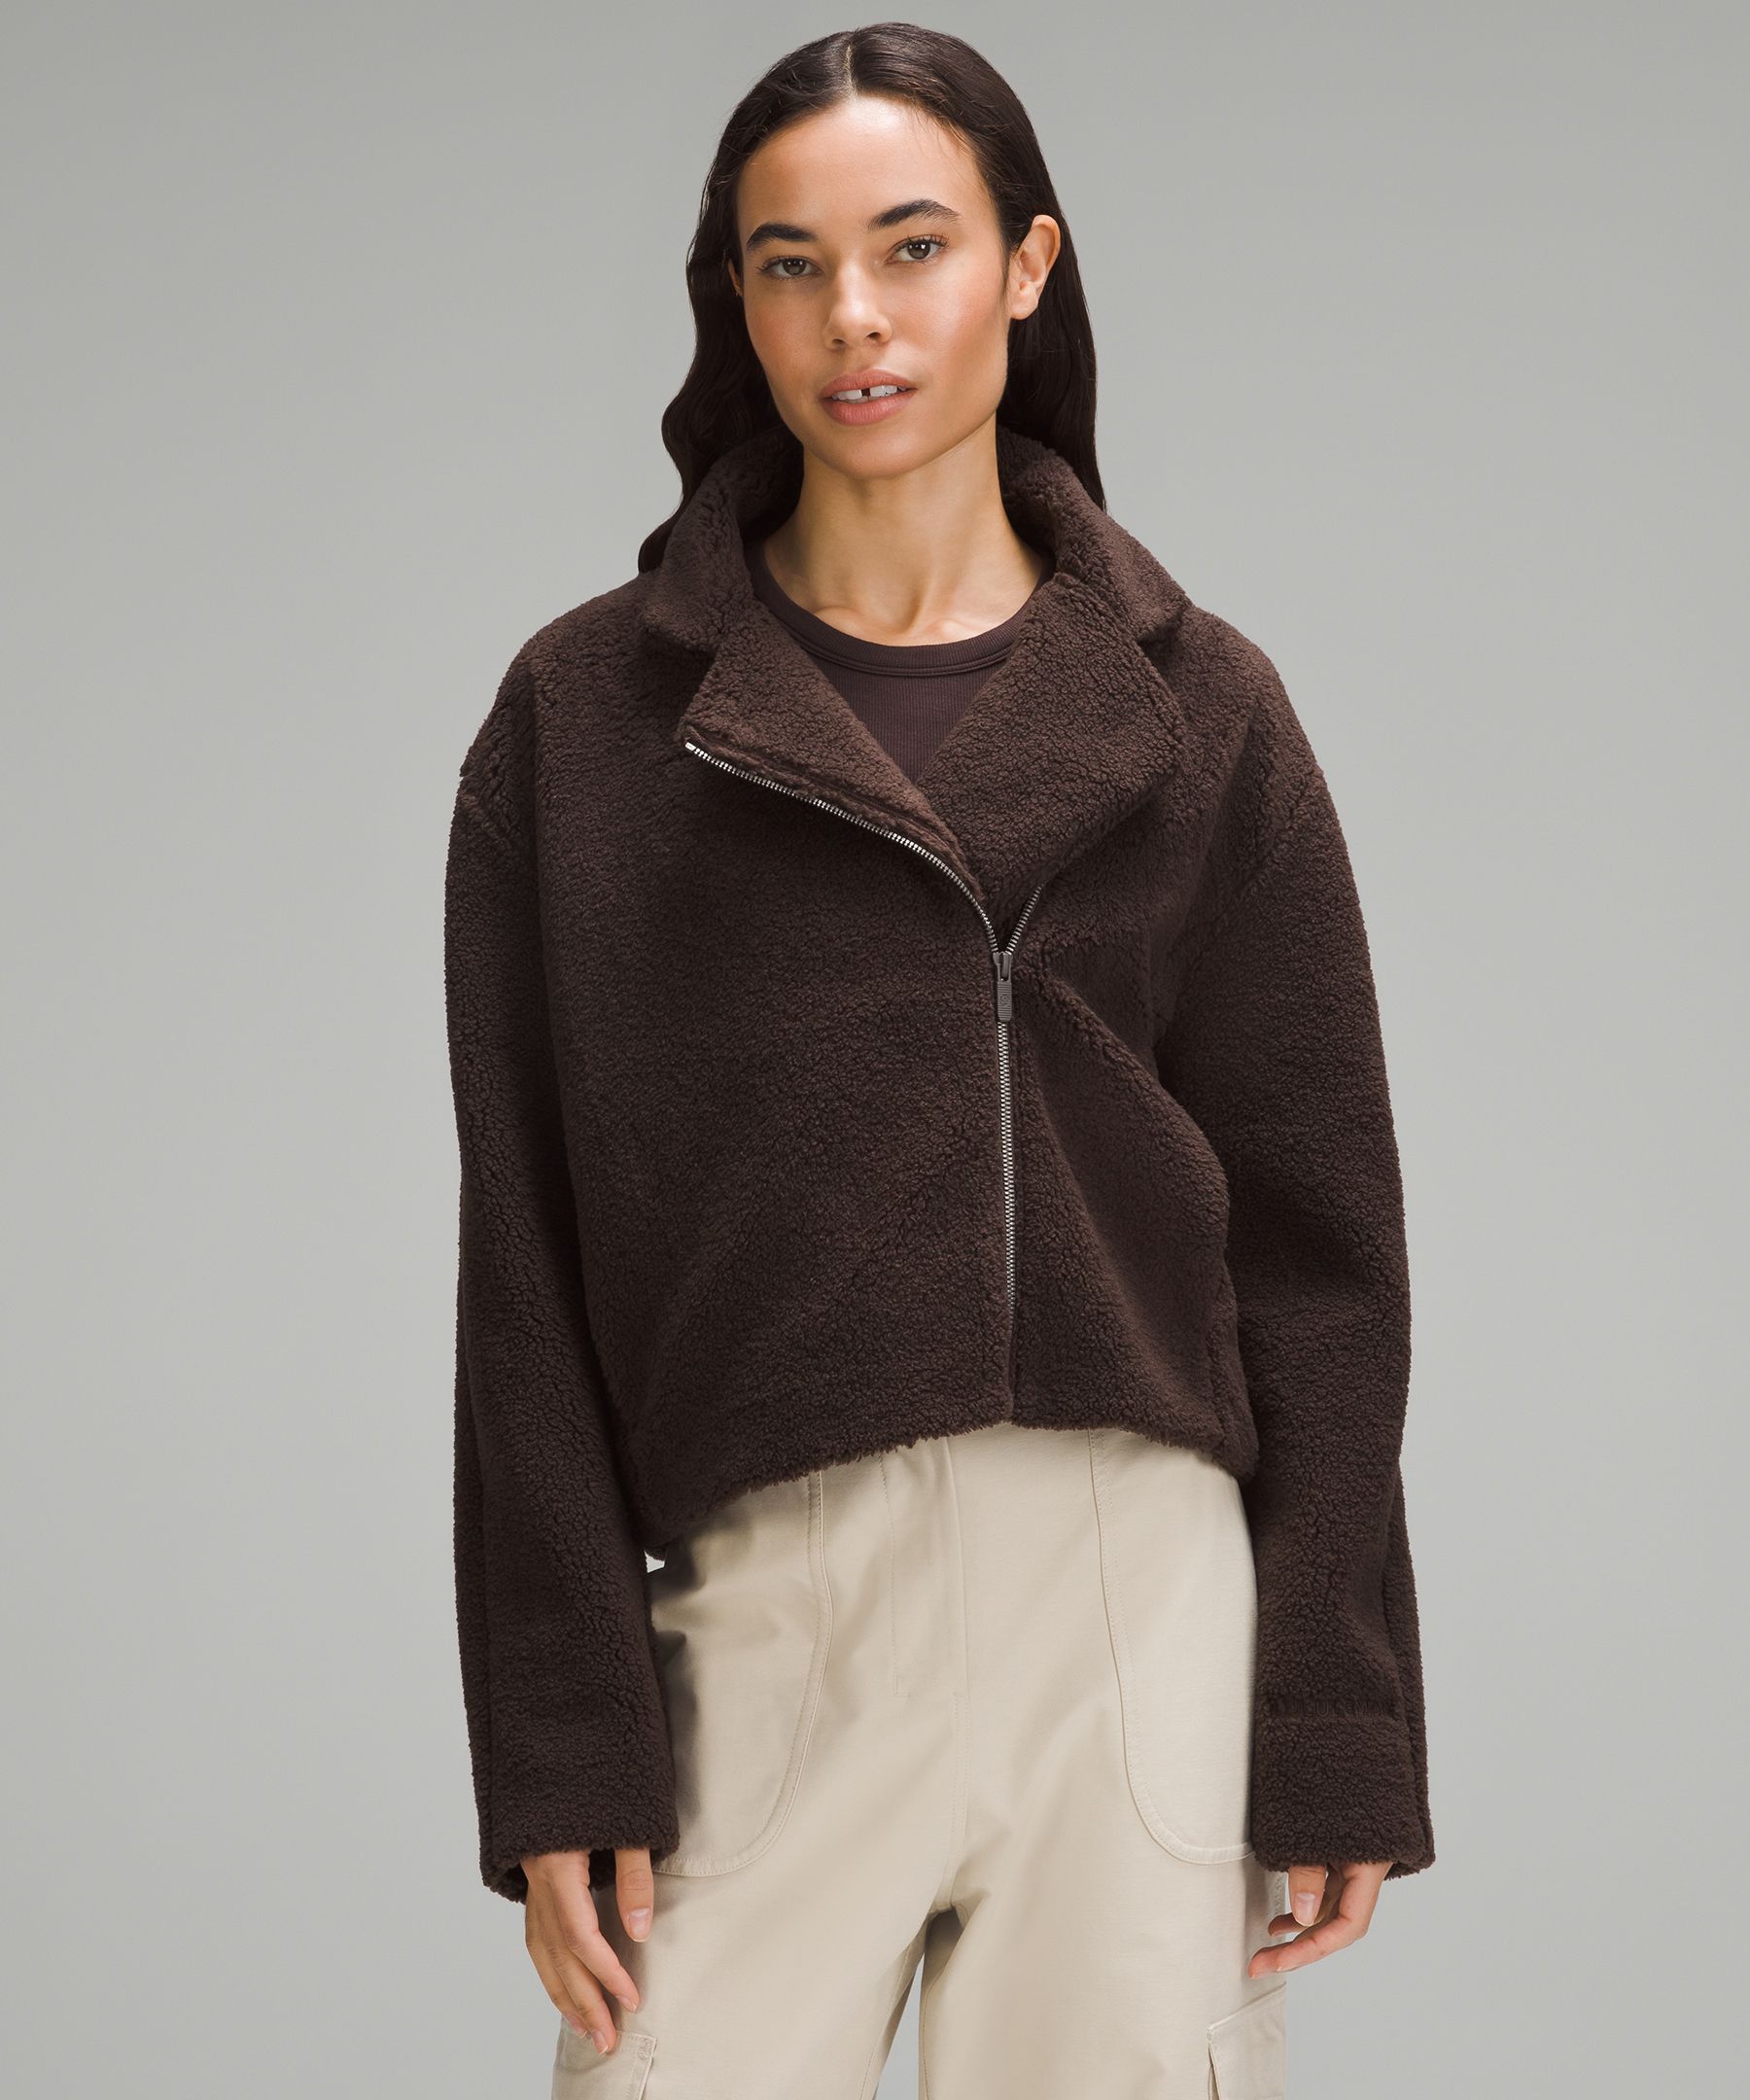 Textured Fleece Collared Jacket, Women's Hoodies & Sweatshirts